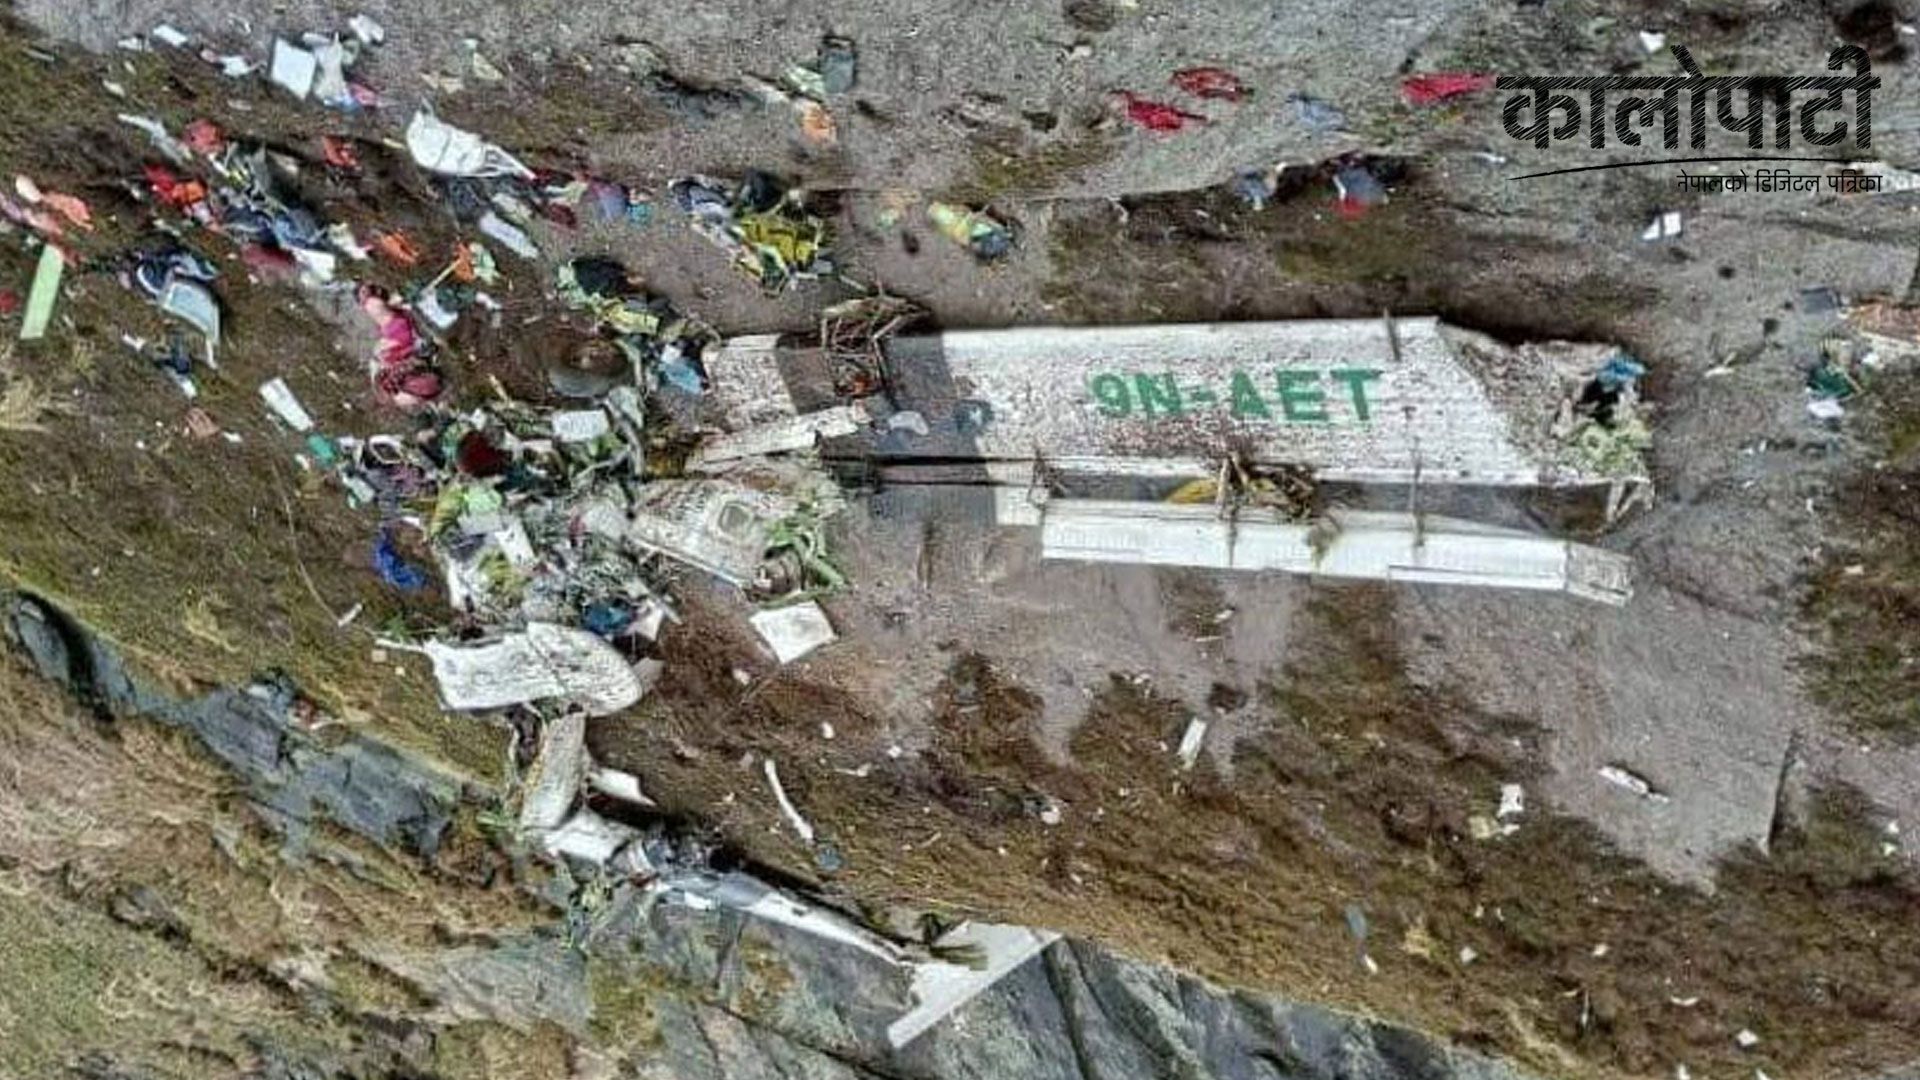 तारा एयरको जहाज दुर्घटना :  मृतकको शव संकलन गरी काठमाडौं ल्याइने